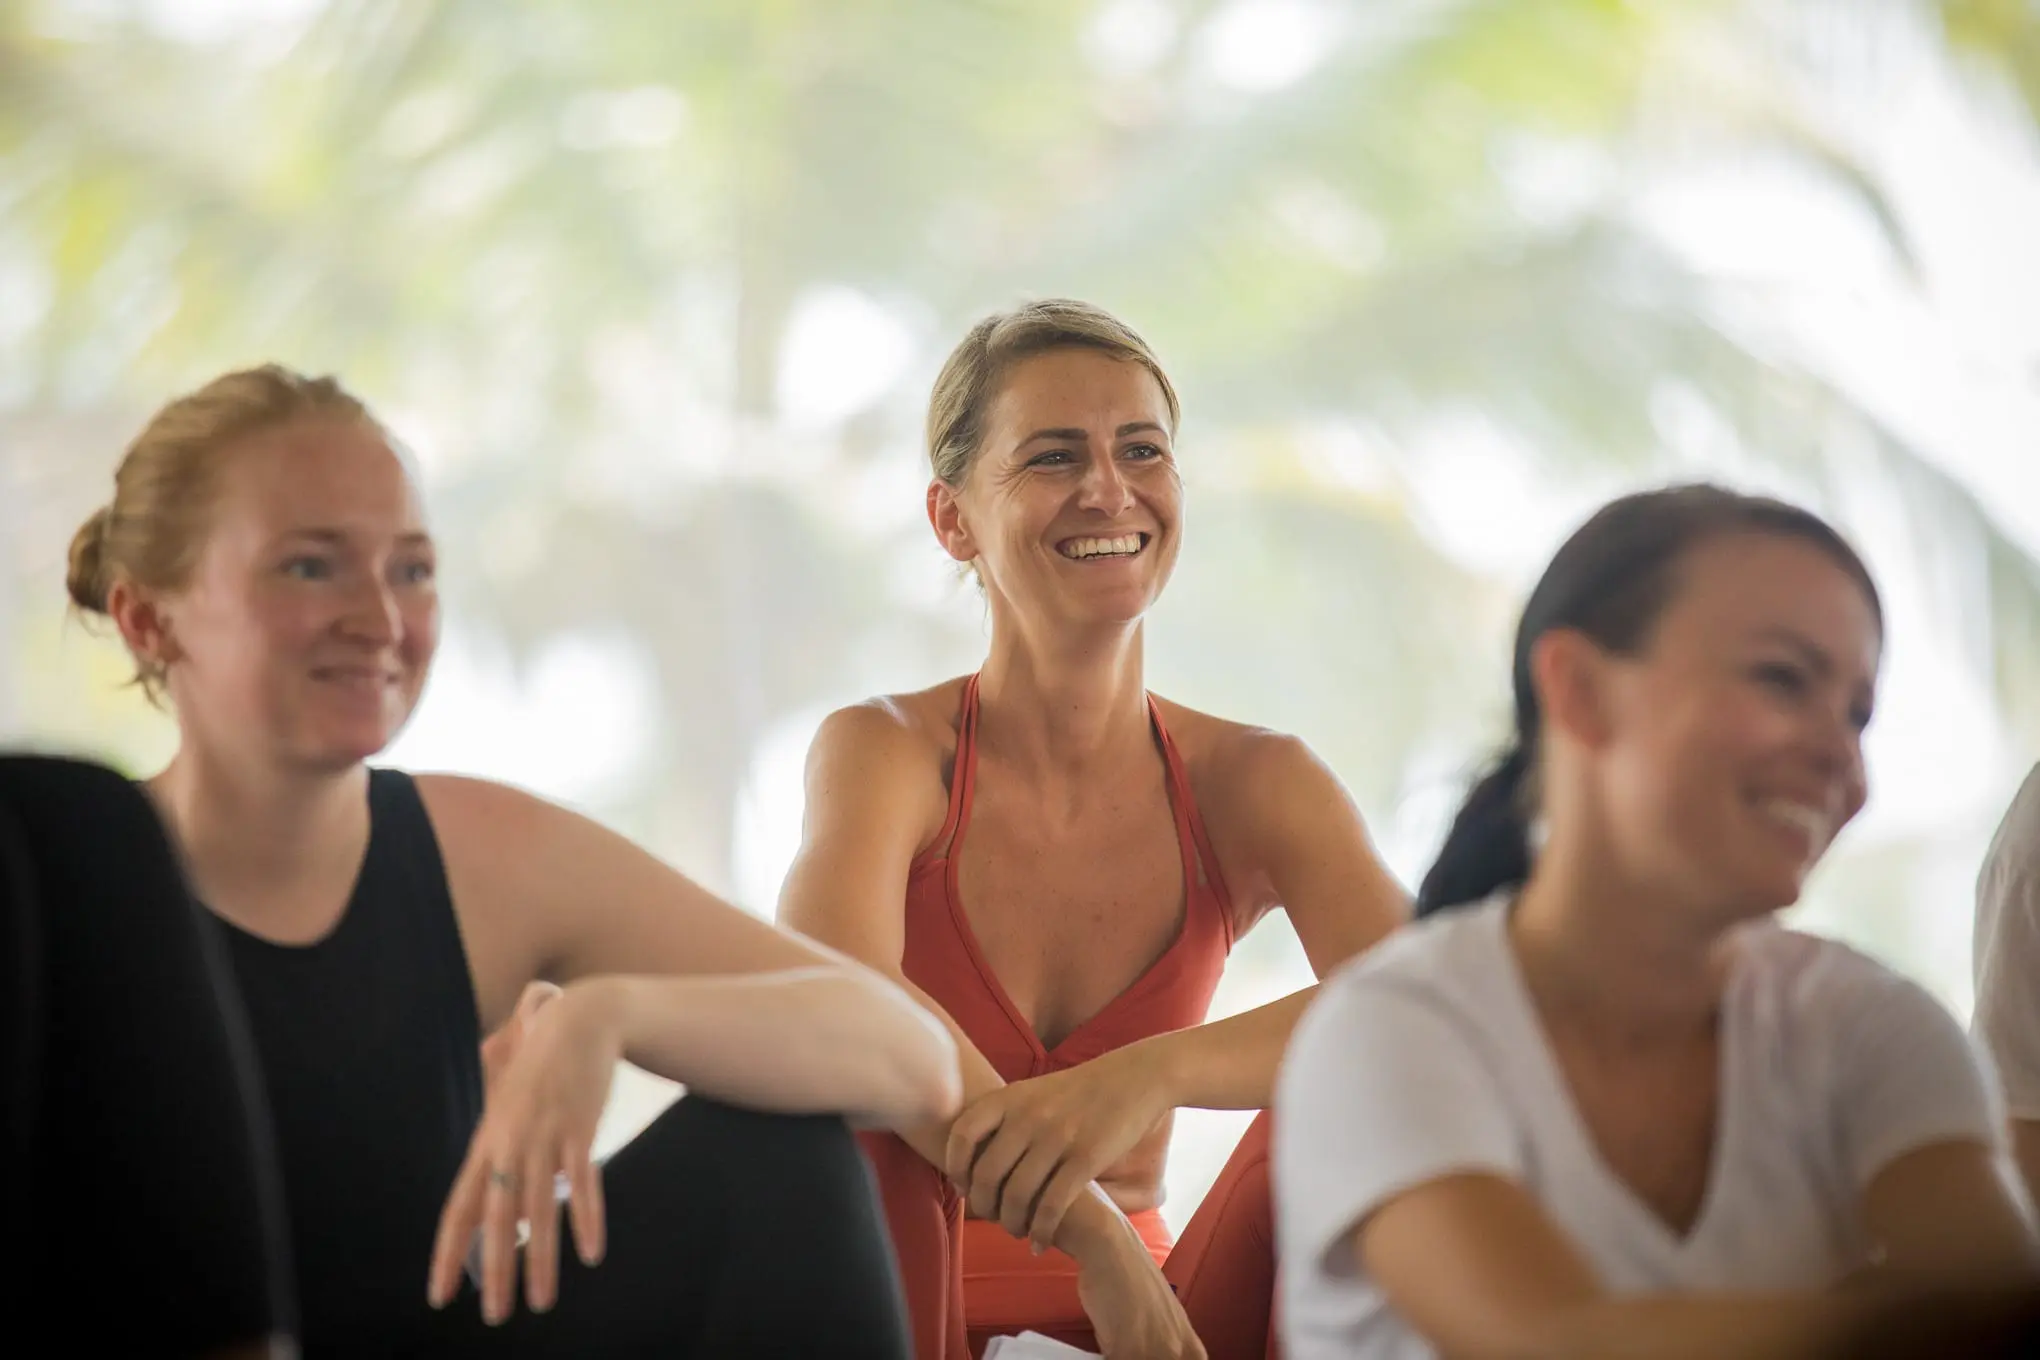 200-hour yoga teacher training 